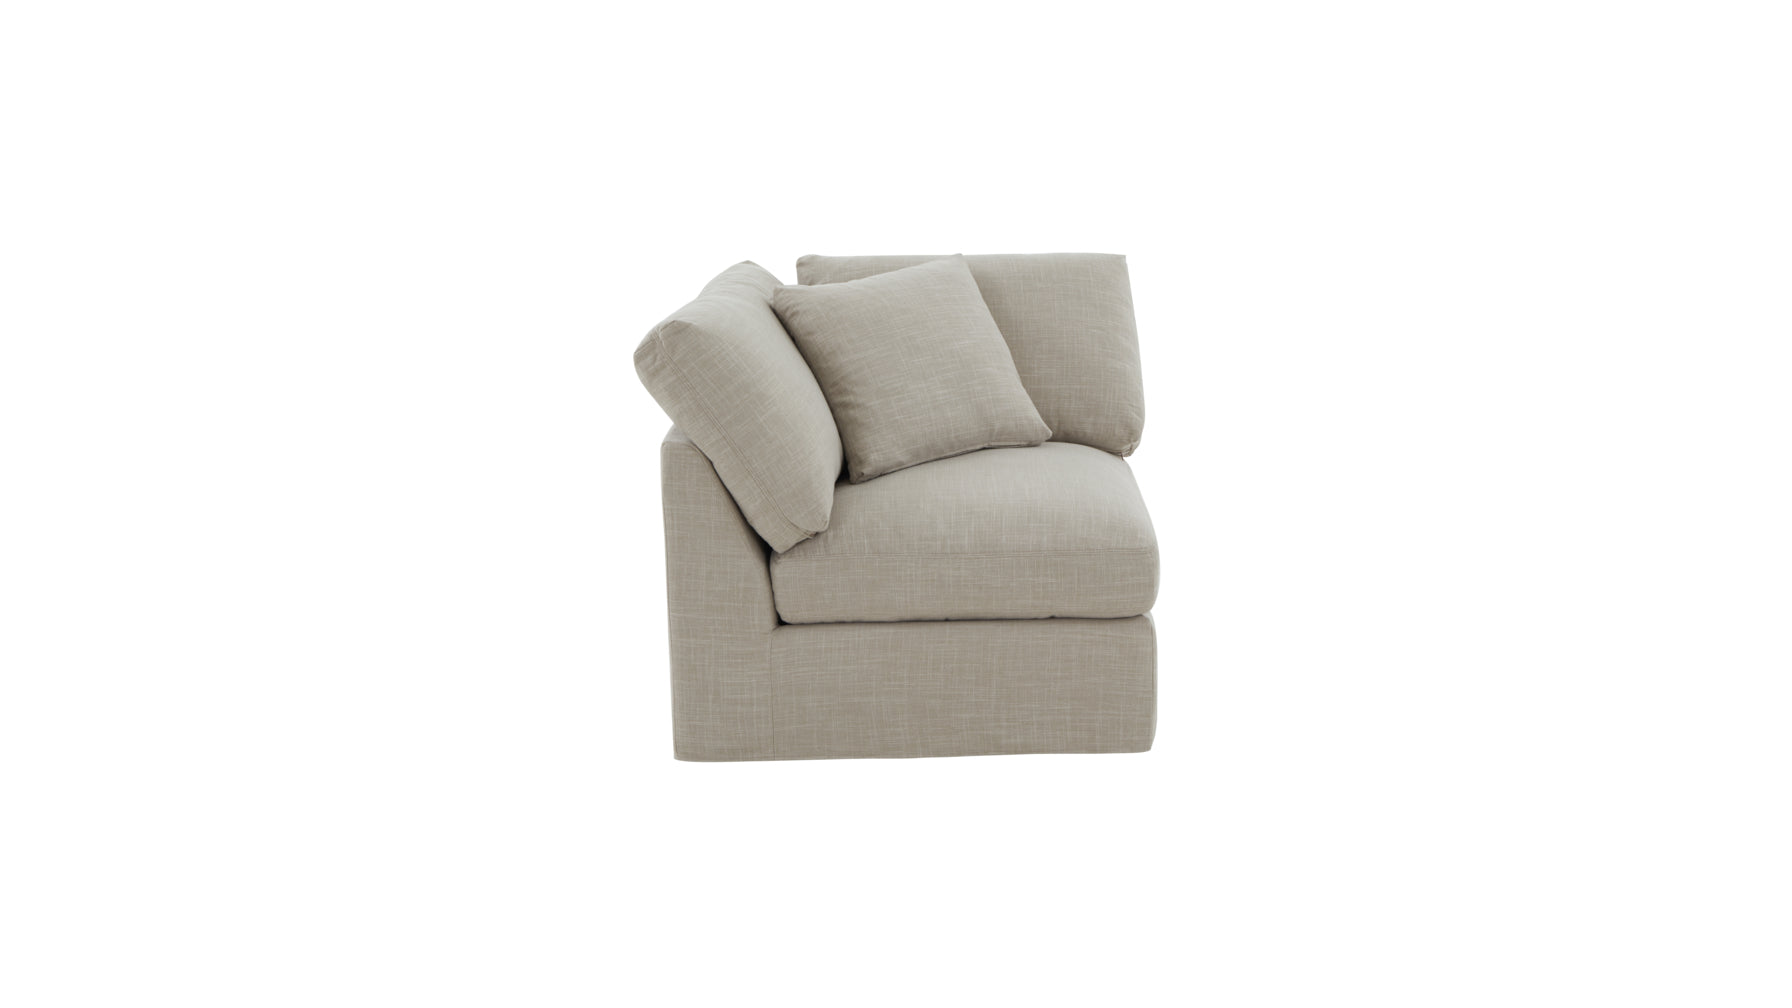 Get Together™ Corner Chair, Standard, Light Pebble - Image 7